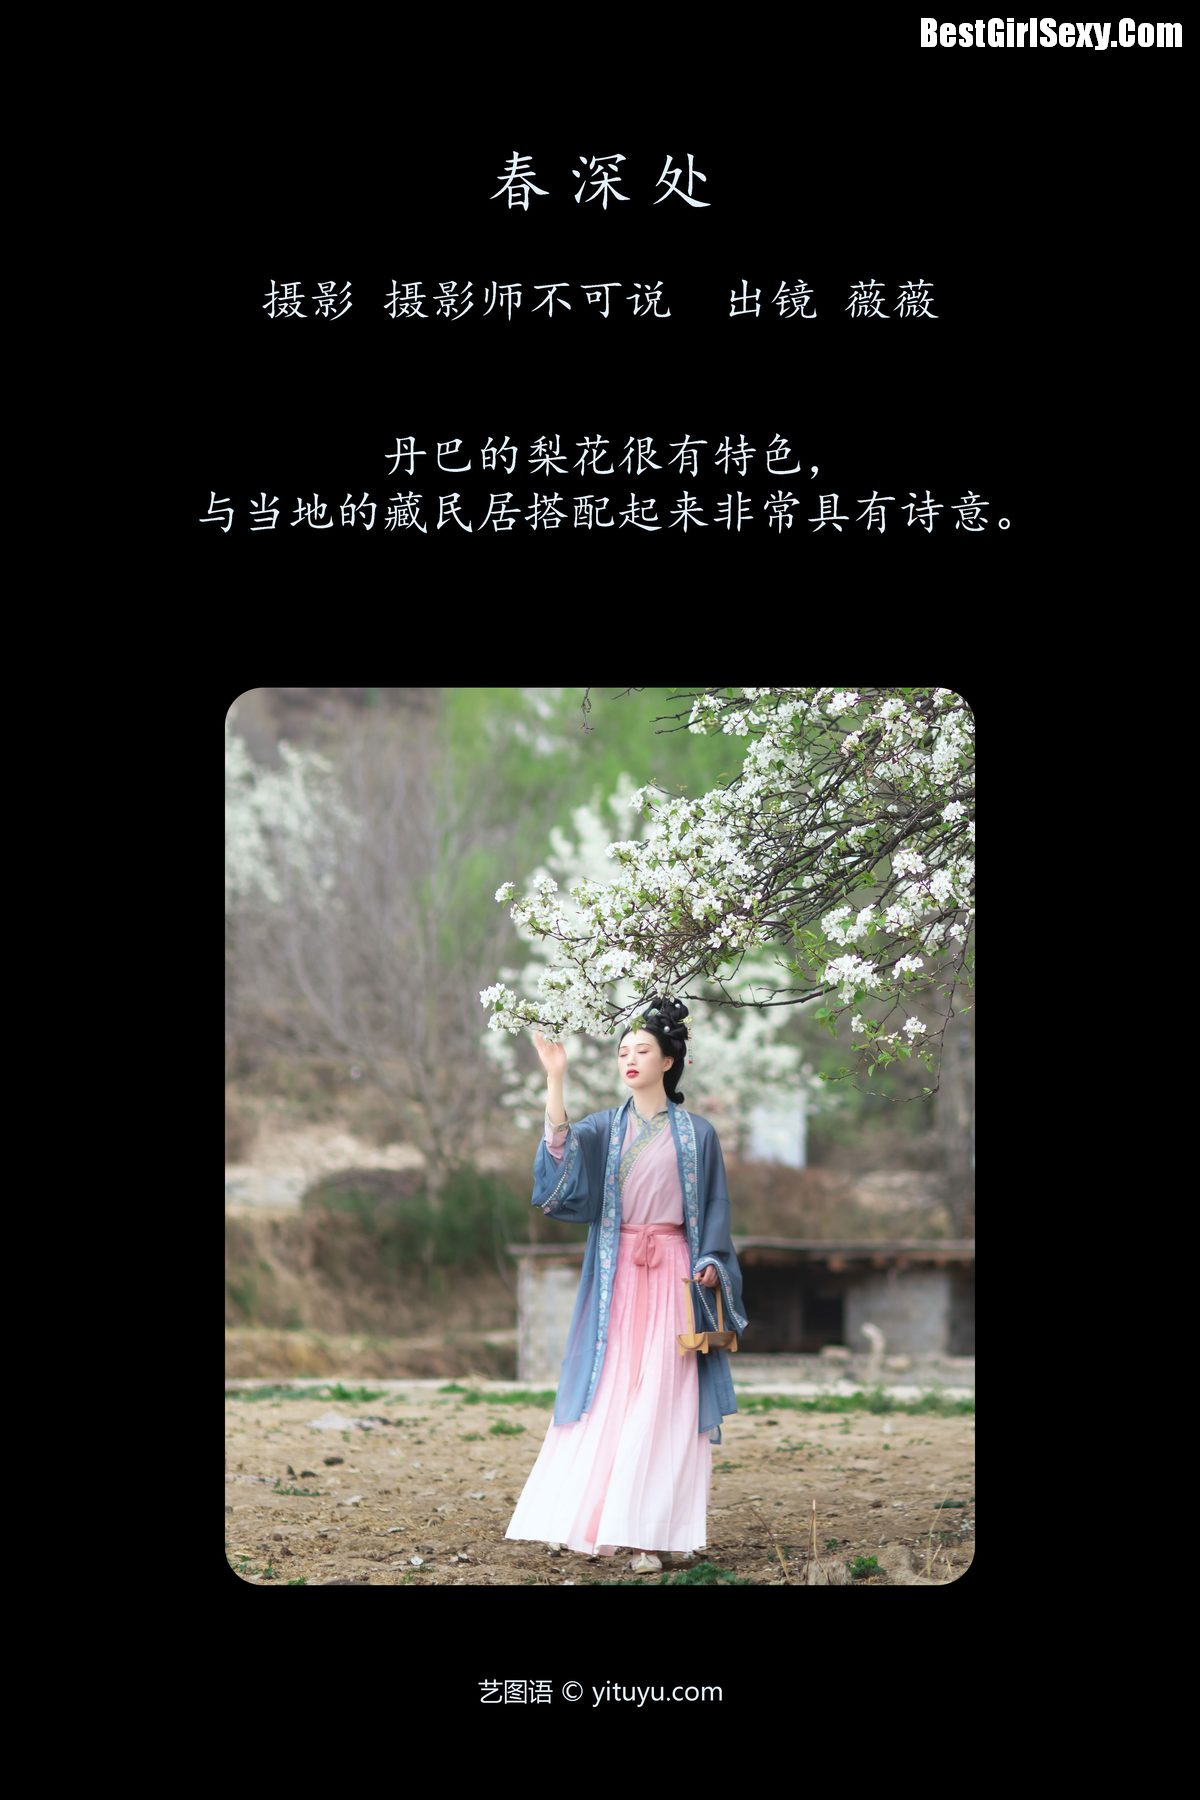 YiTuYu艺图语 Vol 3999 Wei Wei 0001 4523931459.jpg